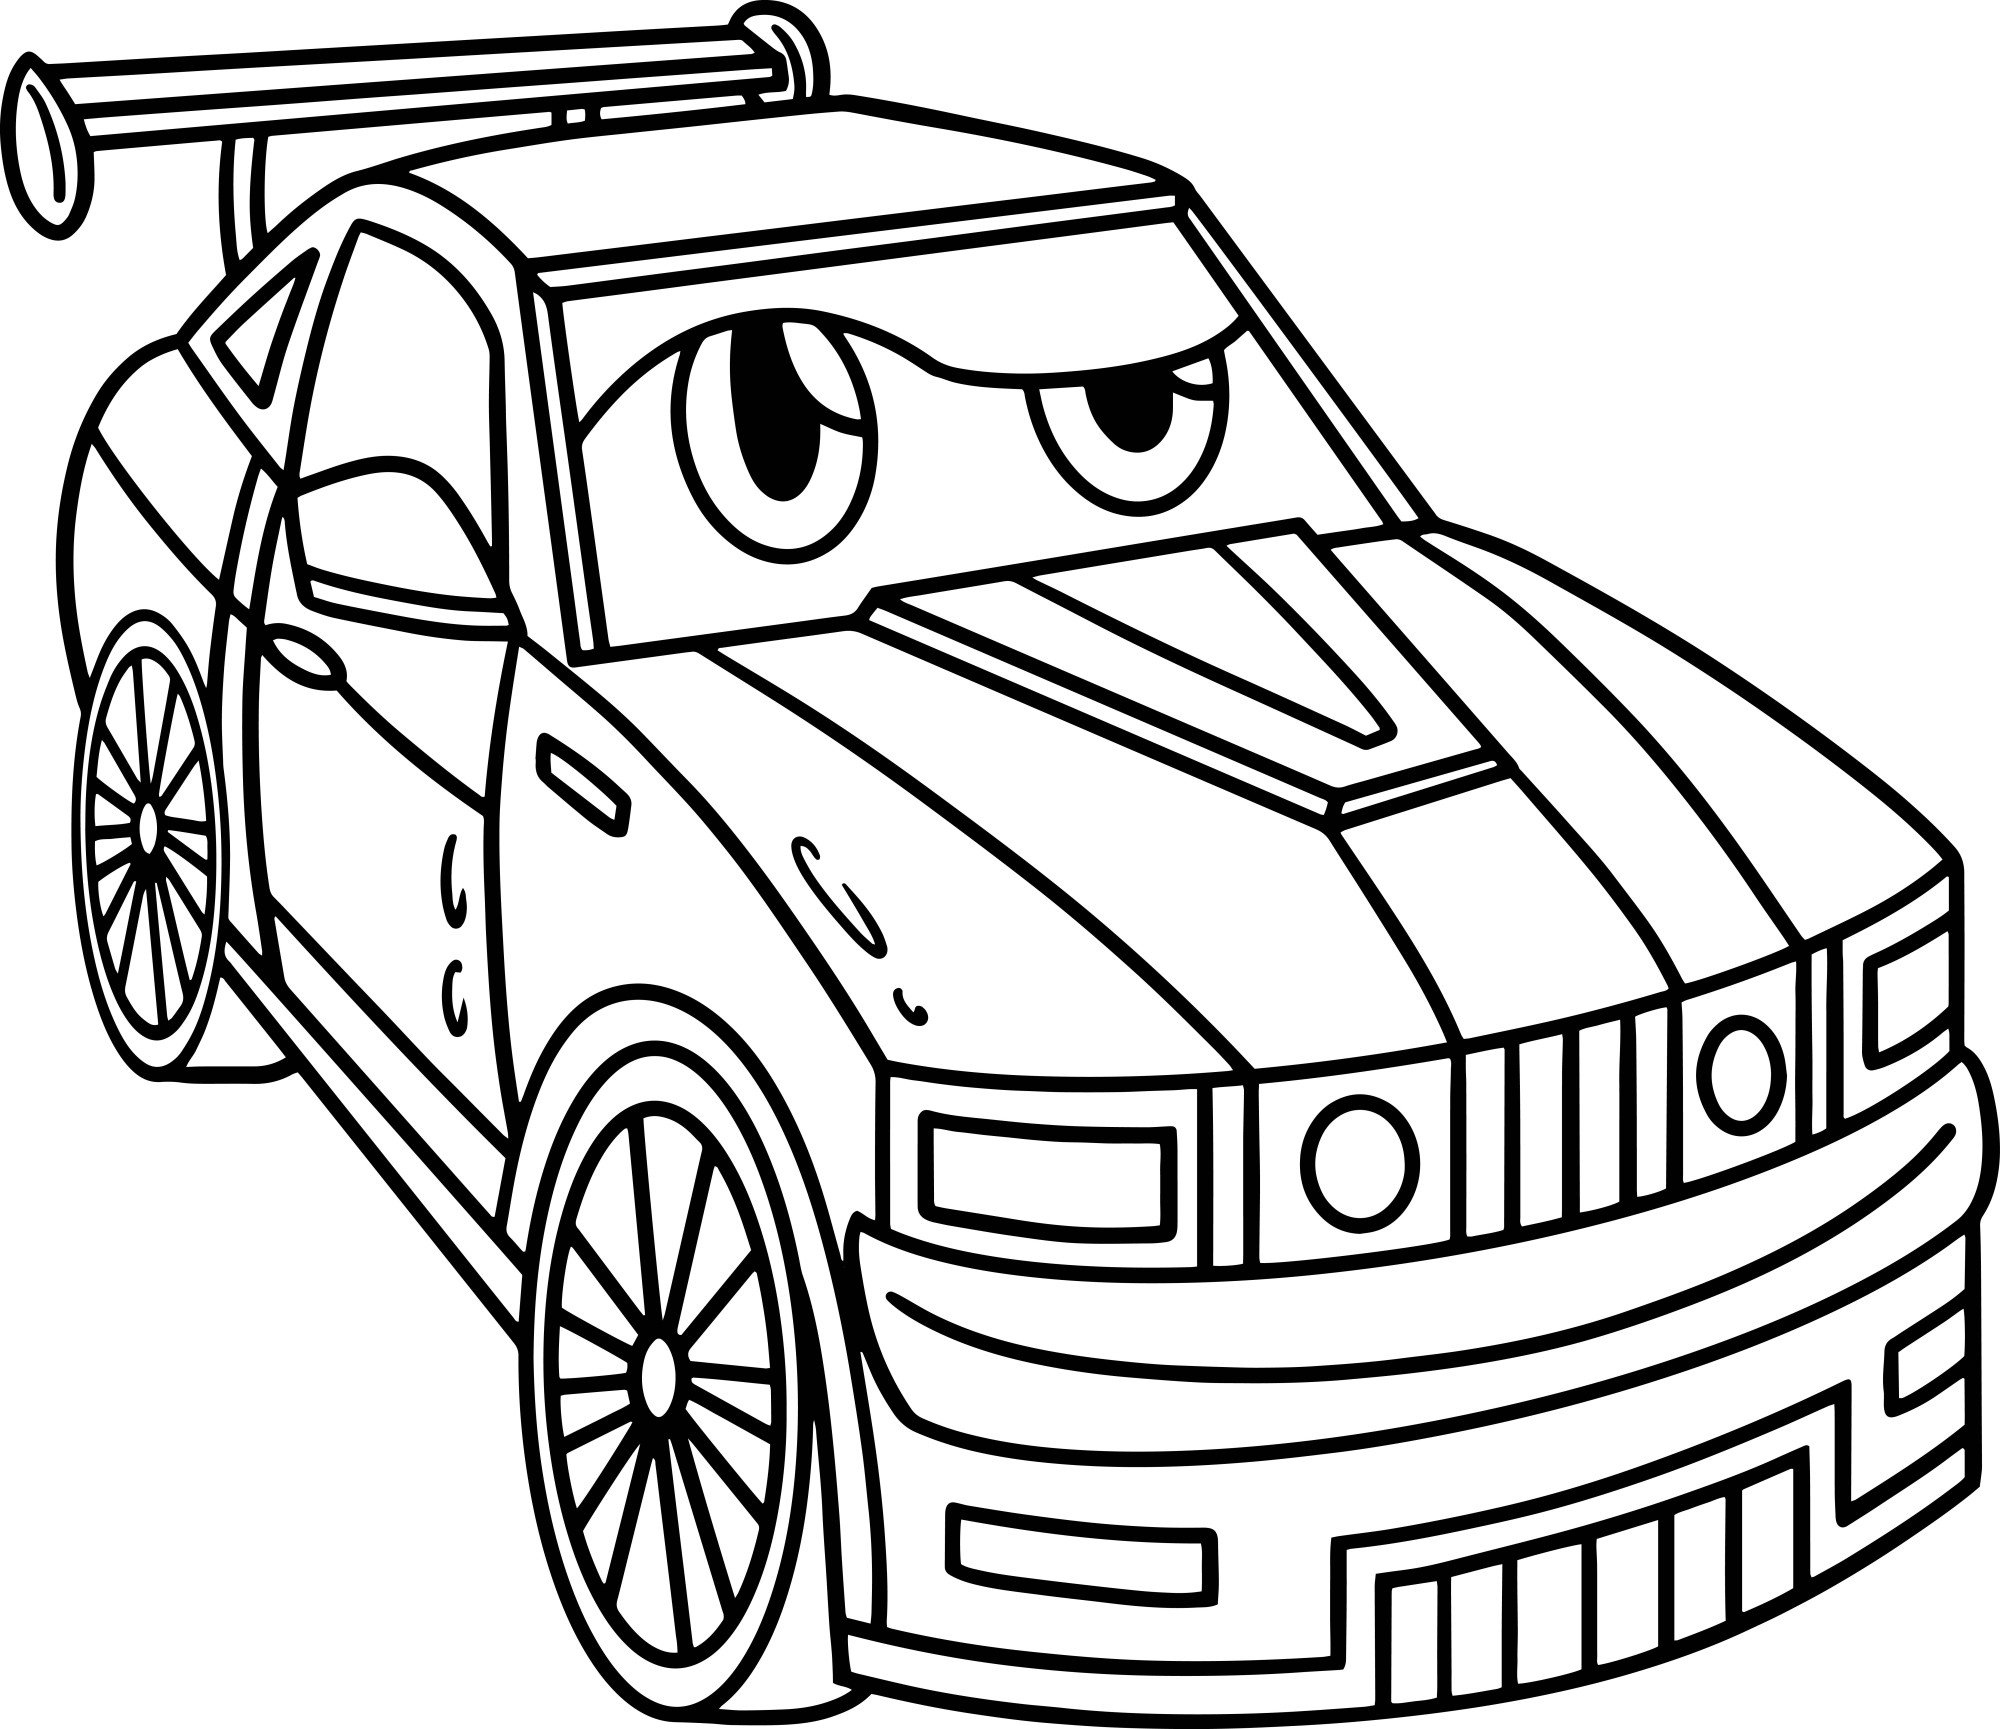 Раскраска для детей: гоночный автомобиль с лицом